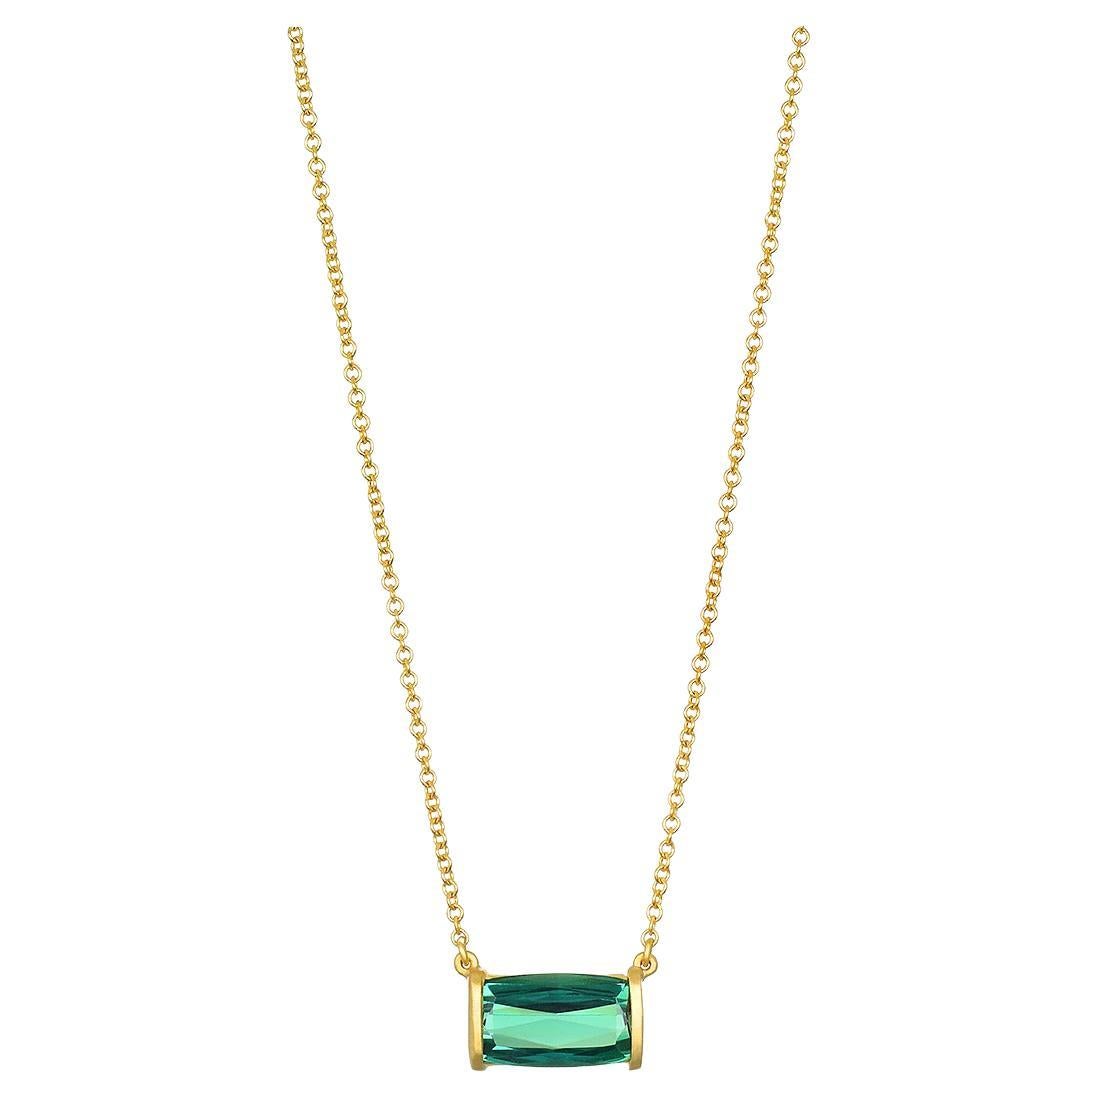 Contemporary Faye Kim 18 Karat Gold Bar Set Green Tourmaline Necklace For Sale